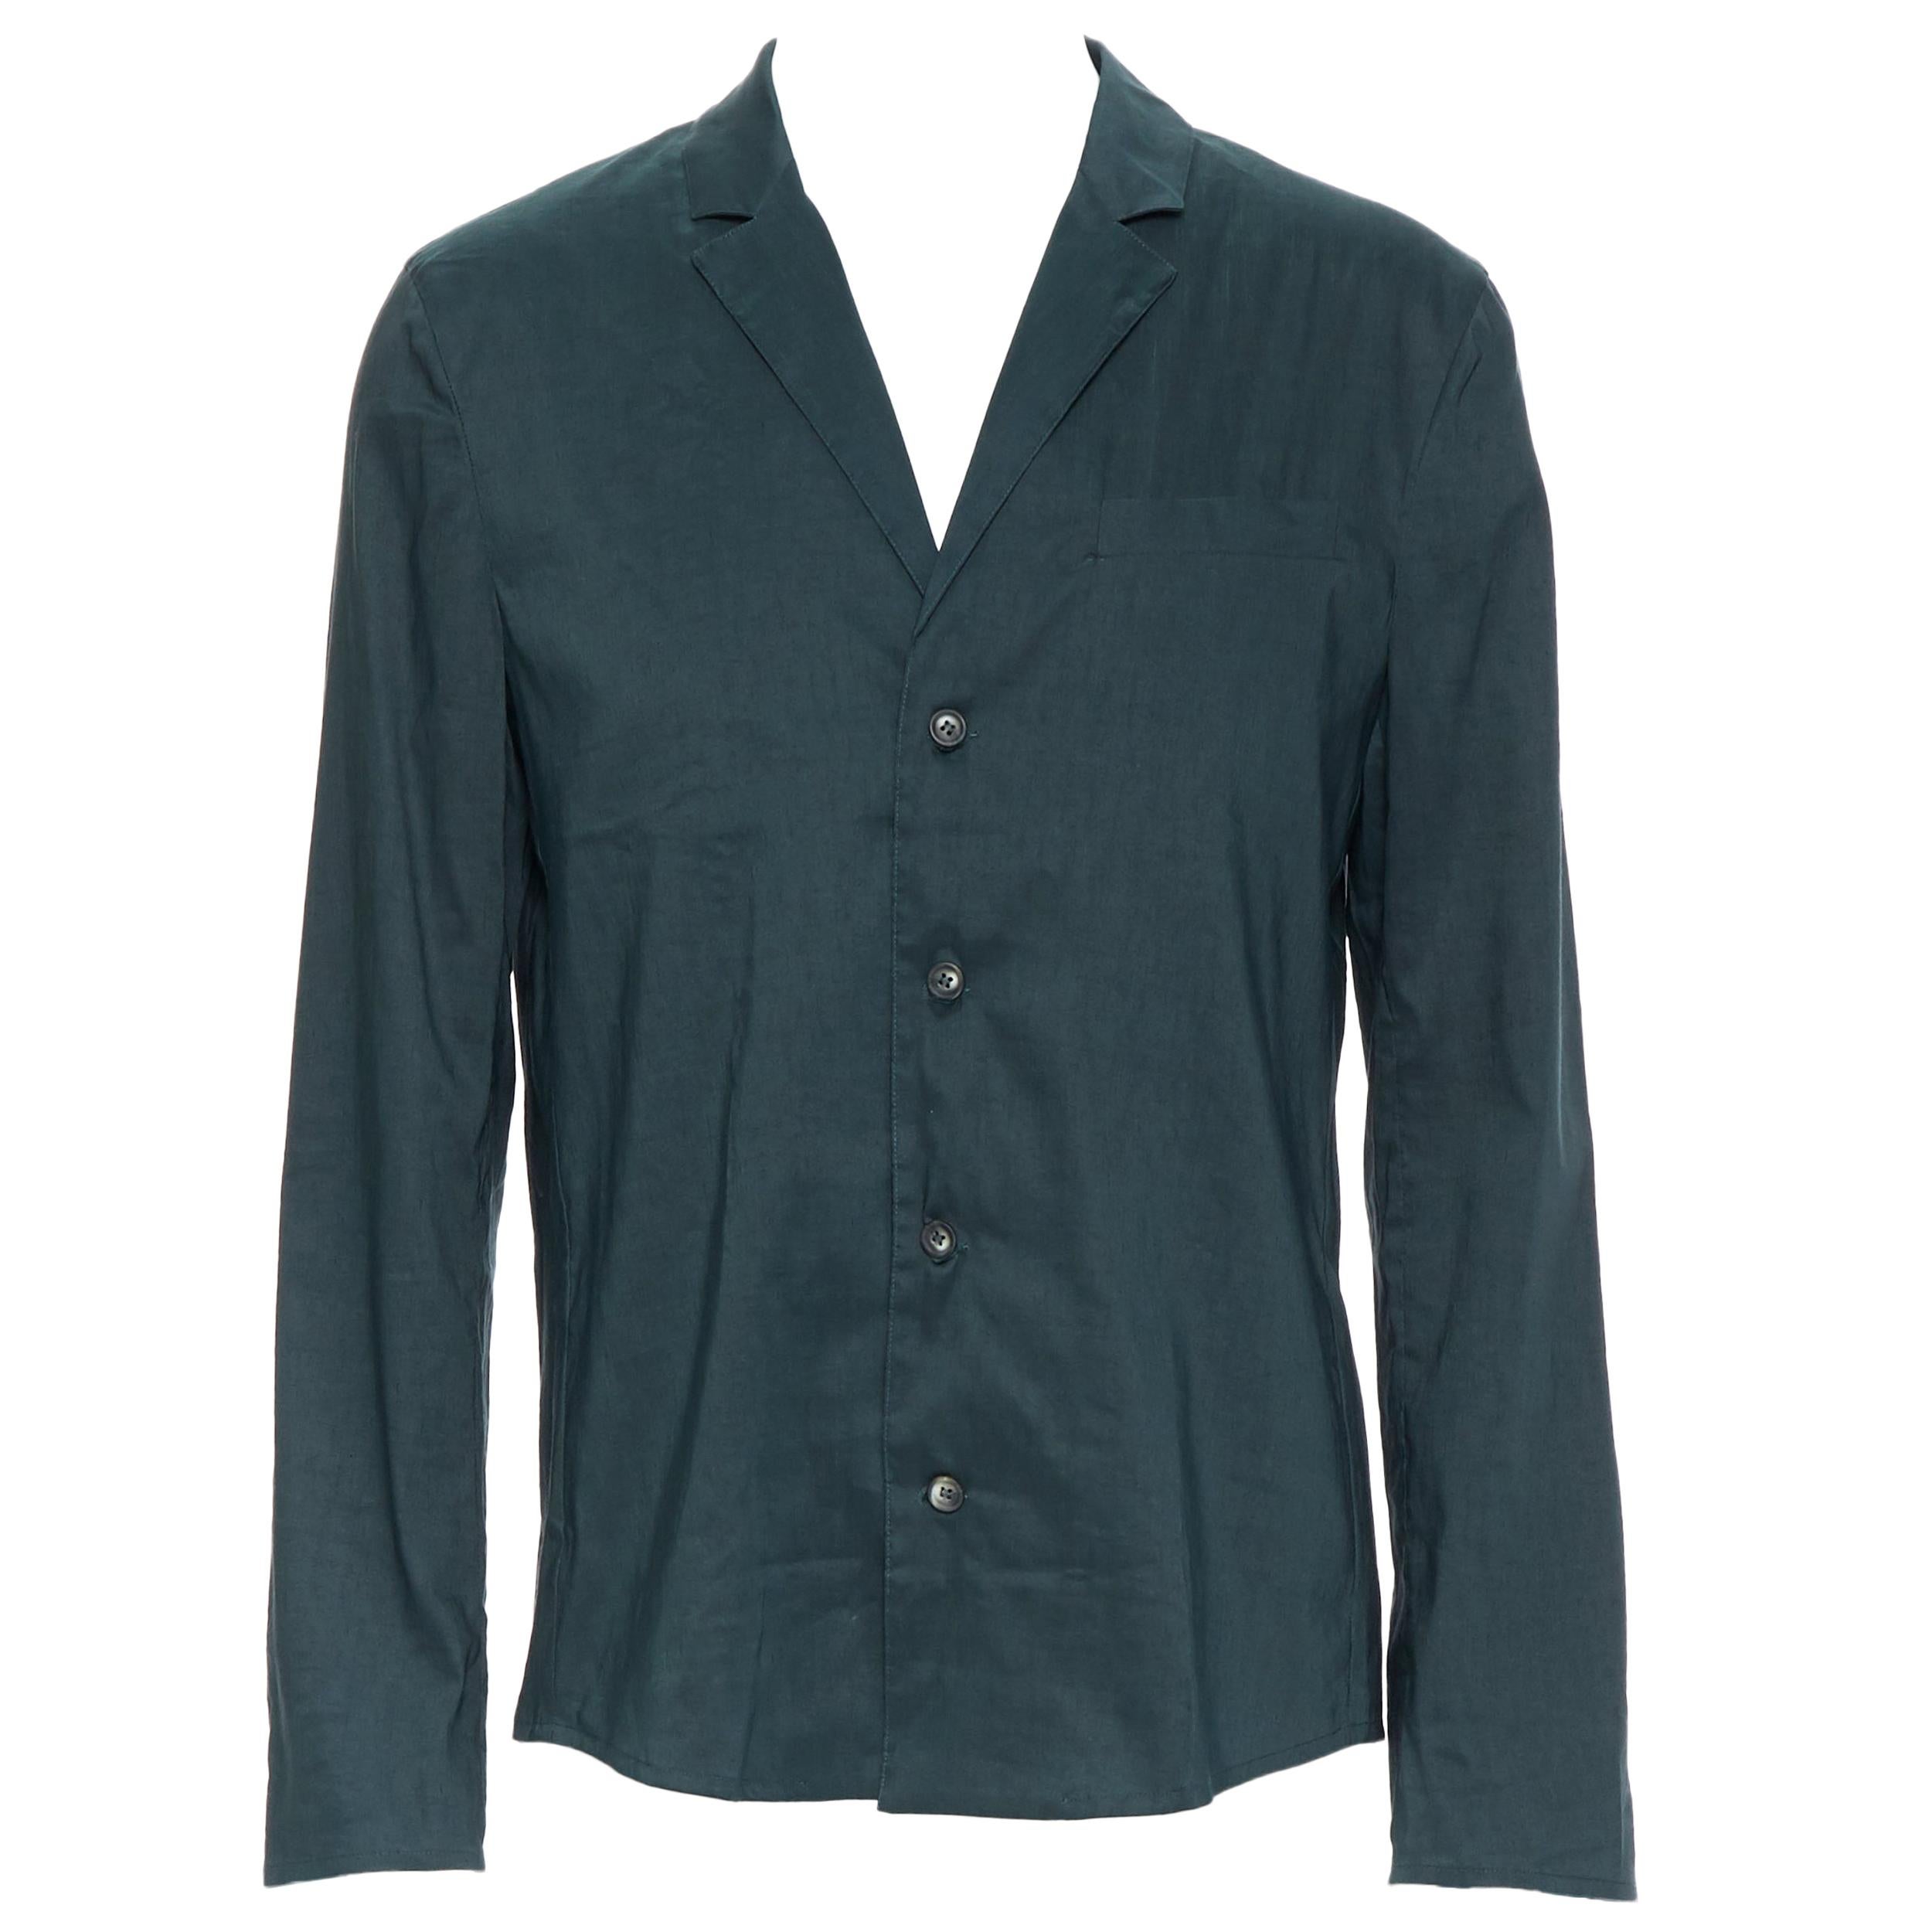 new LA PERLA dark green linen blend notched collar button front pyjama shirt XL